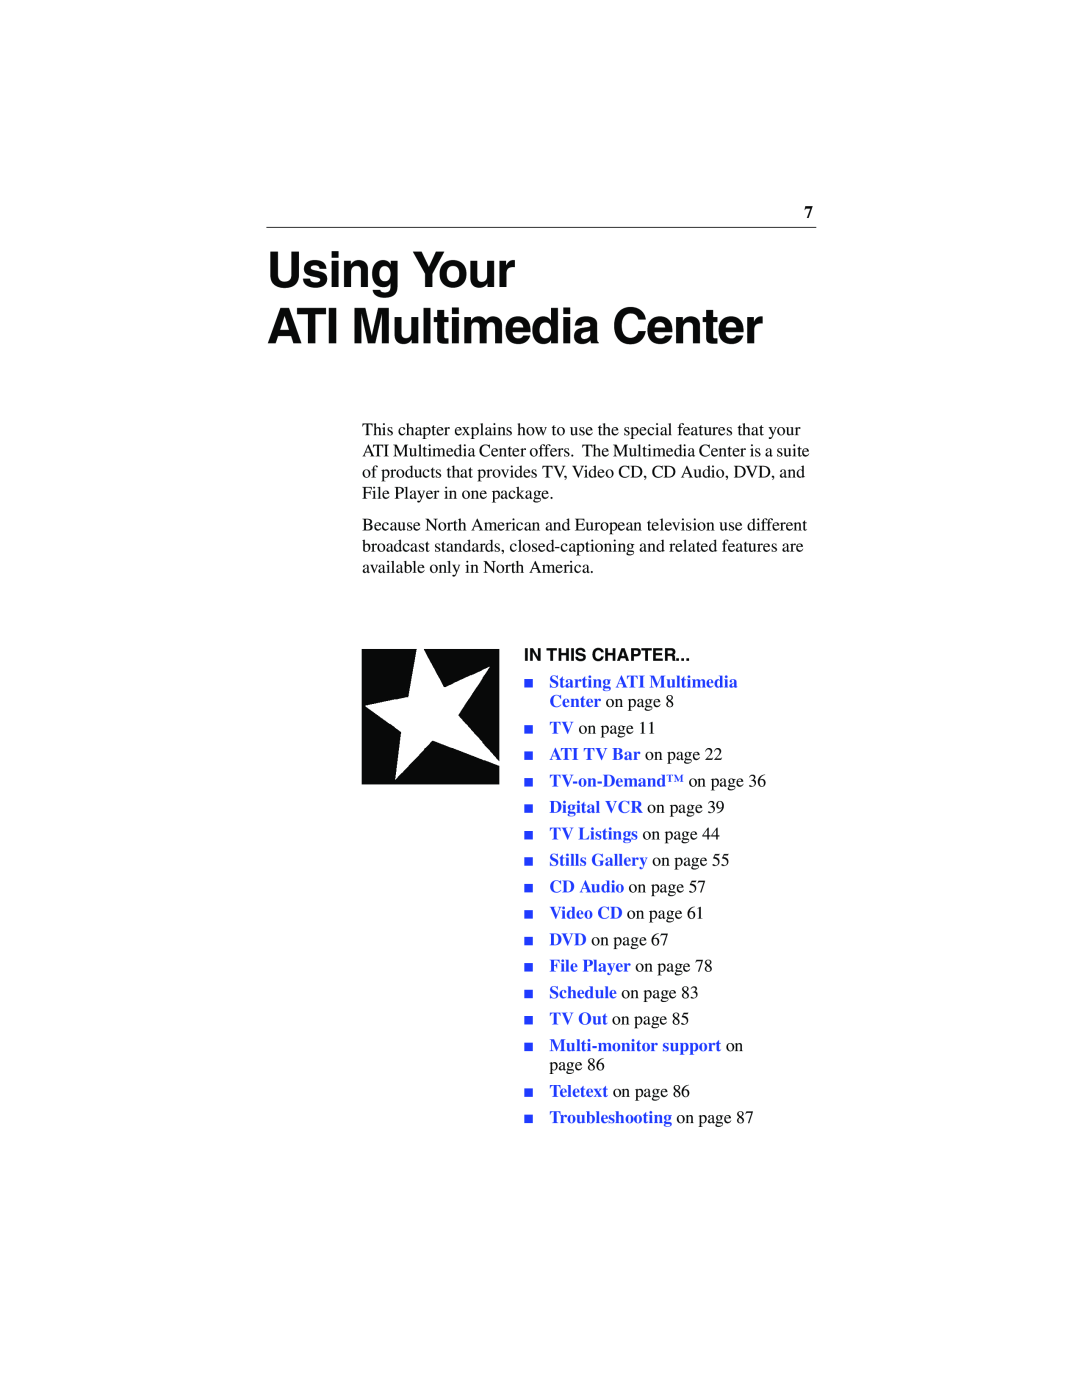 ATI Technologies 137-40188-60 Using Your ATI Multimedia Center, In This Chapter, Starting ATI Multimedia Center on page 